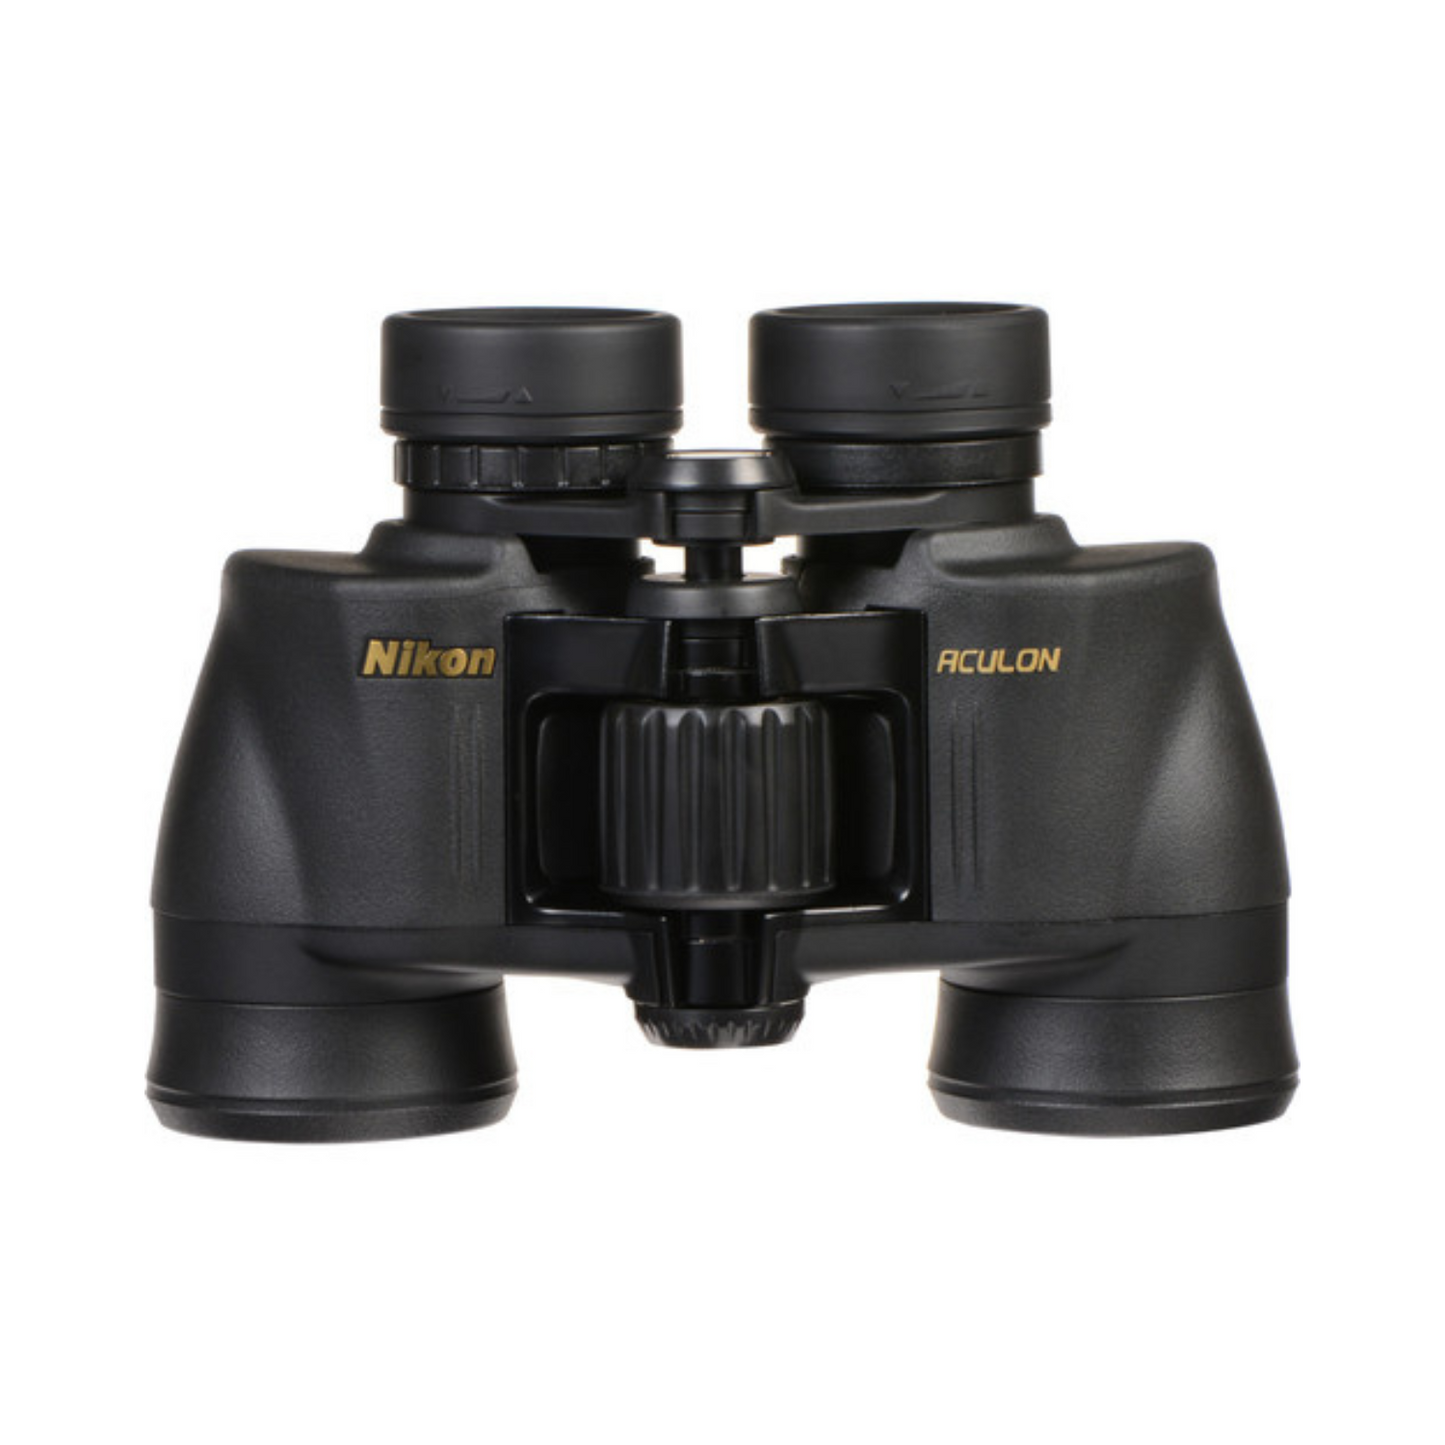 Nikon Aculon A211 7x35 Binocular (Black)